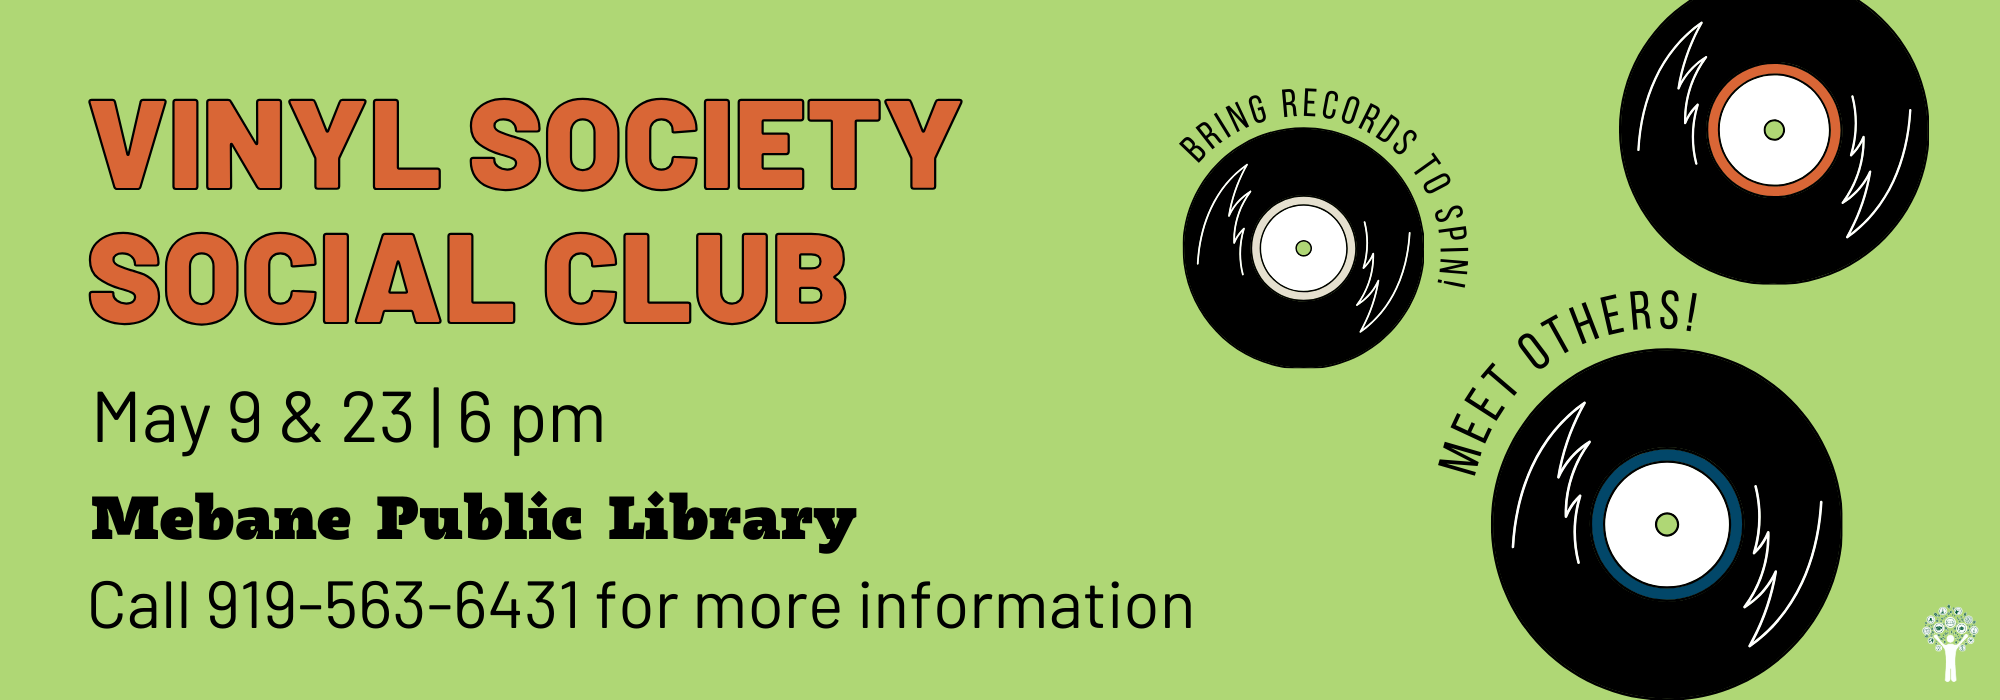 5.9 & 5.23 at 6 pm - Vinyl Society Social Club at Mebane